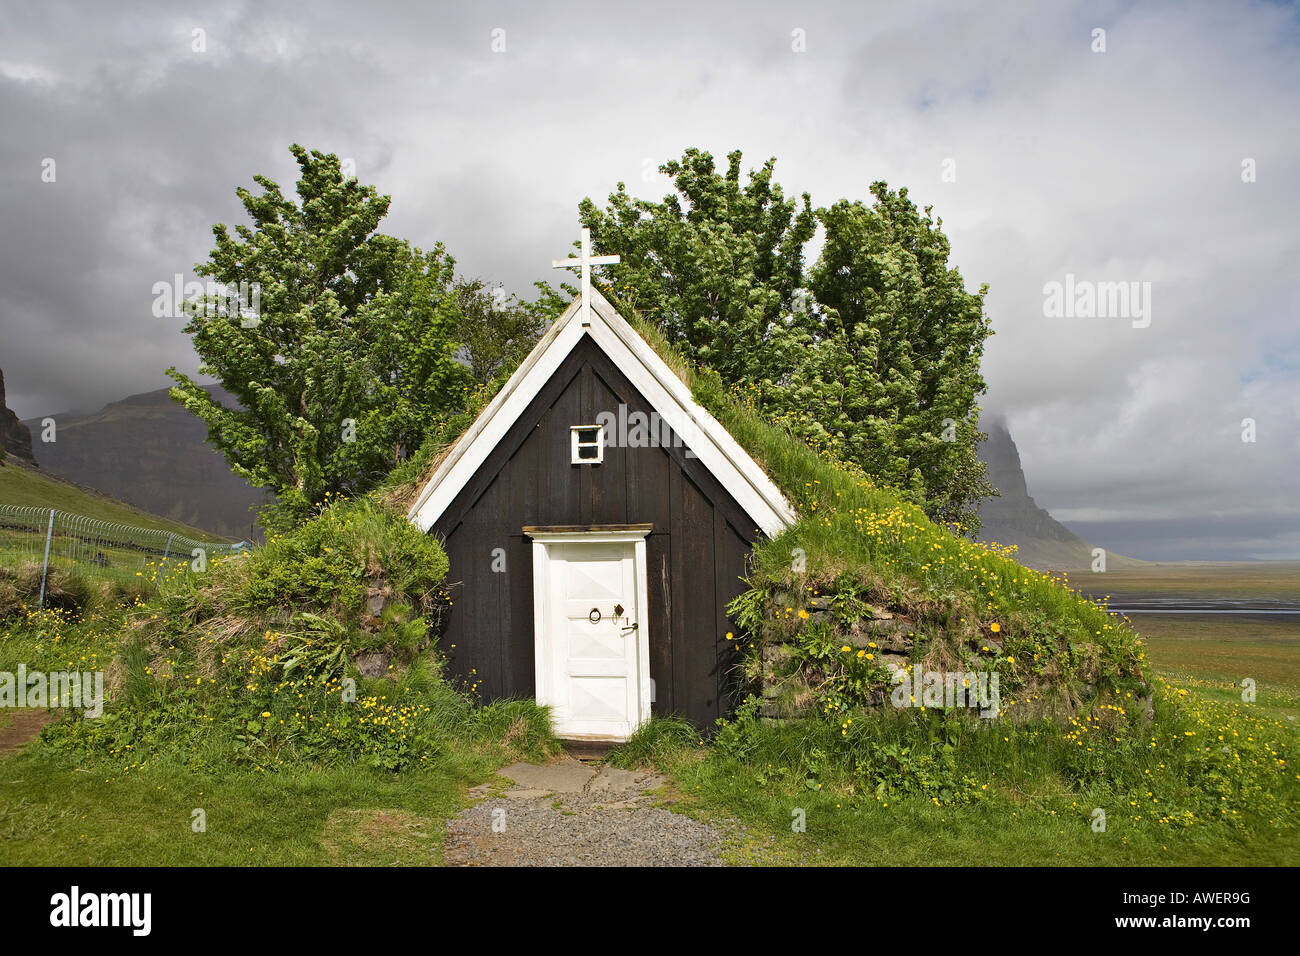 Dix-septième siècle, la plus petite église de sod en Islande, Núpsstaður, autour de la côte sud de l'Islande, l'Océan Atlantique Banque D'Images